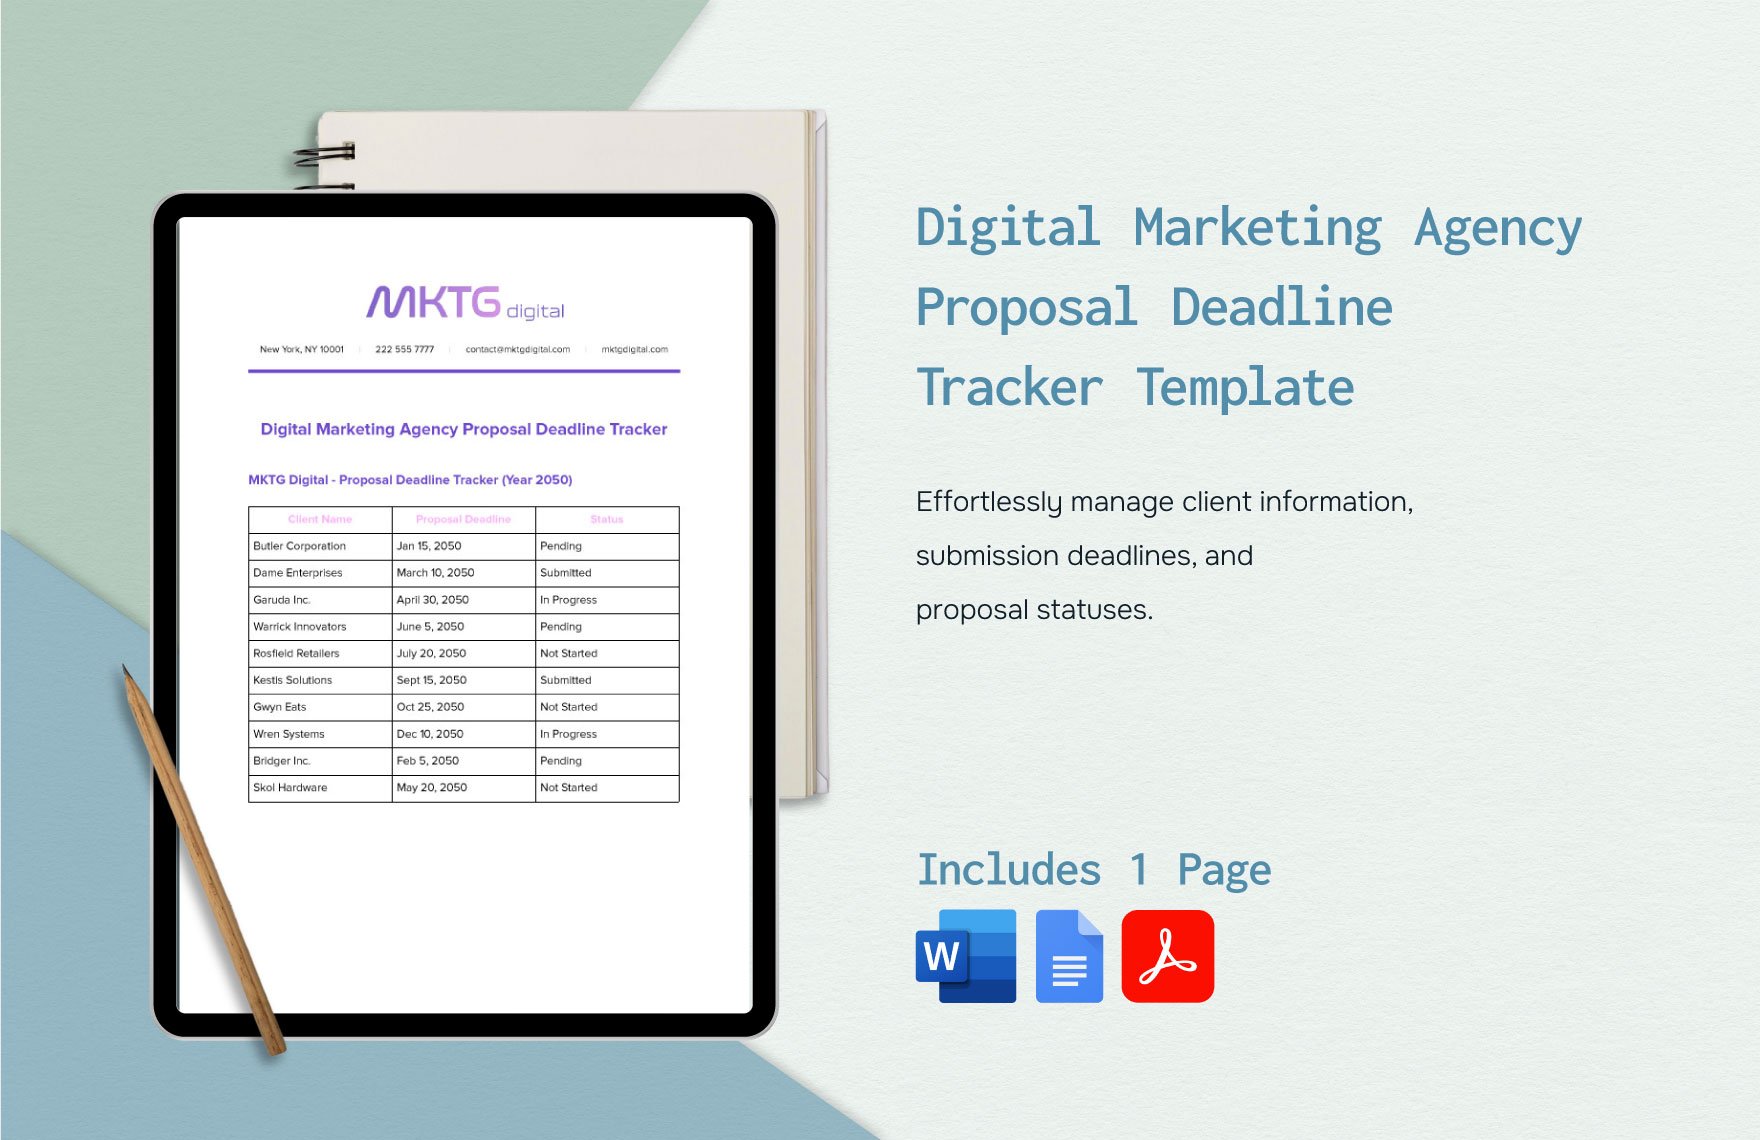 Digital Marketing Agency Proposal Deadline Tracker Template in Word, Google Docs, PDF